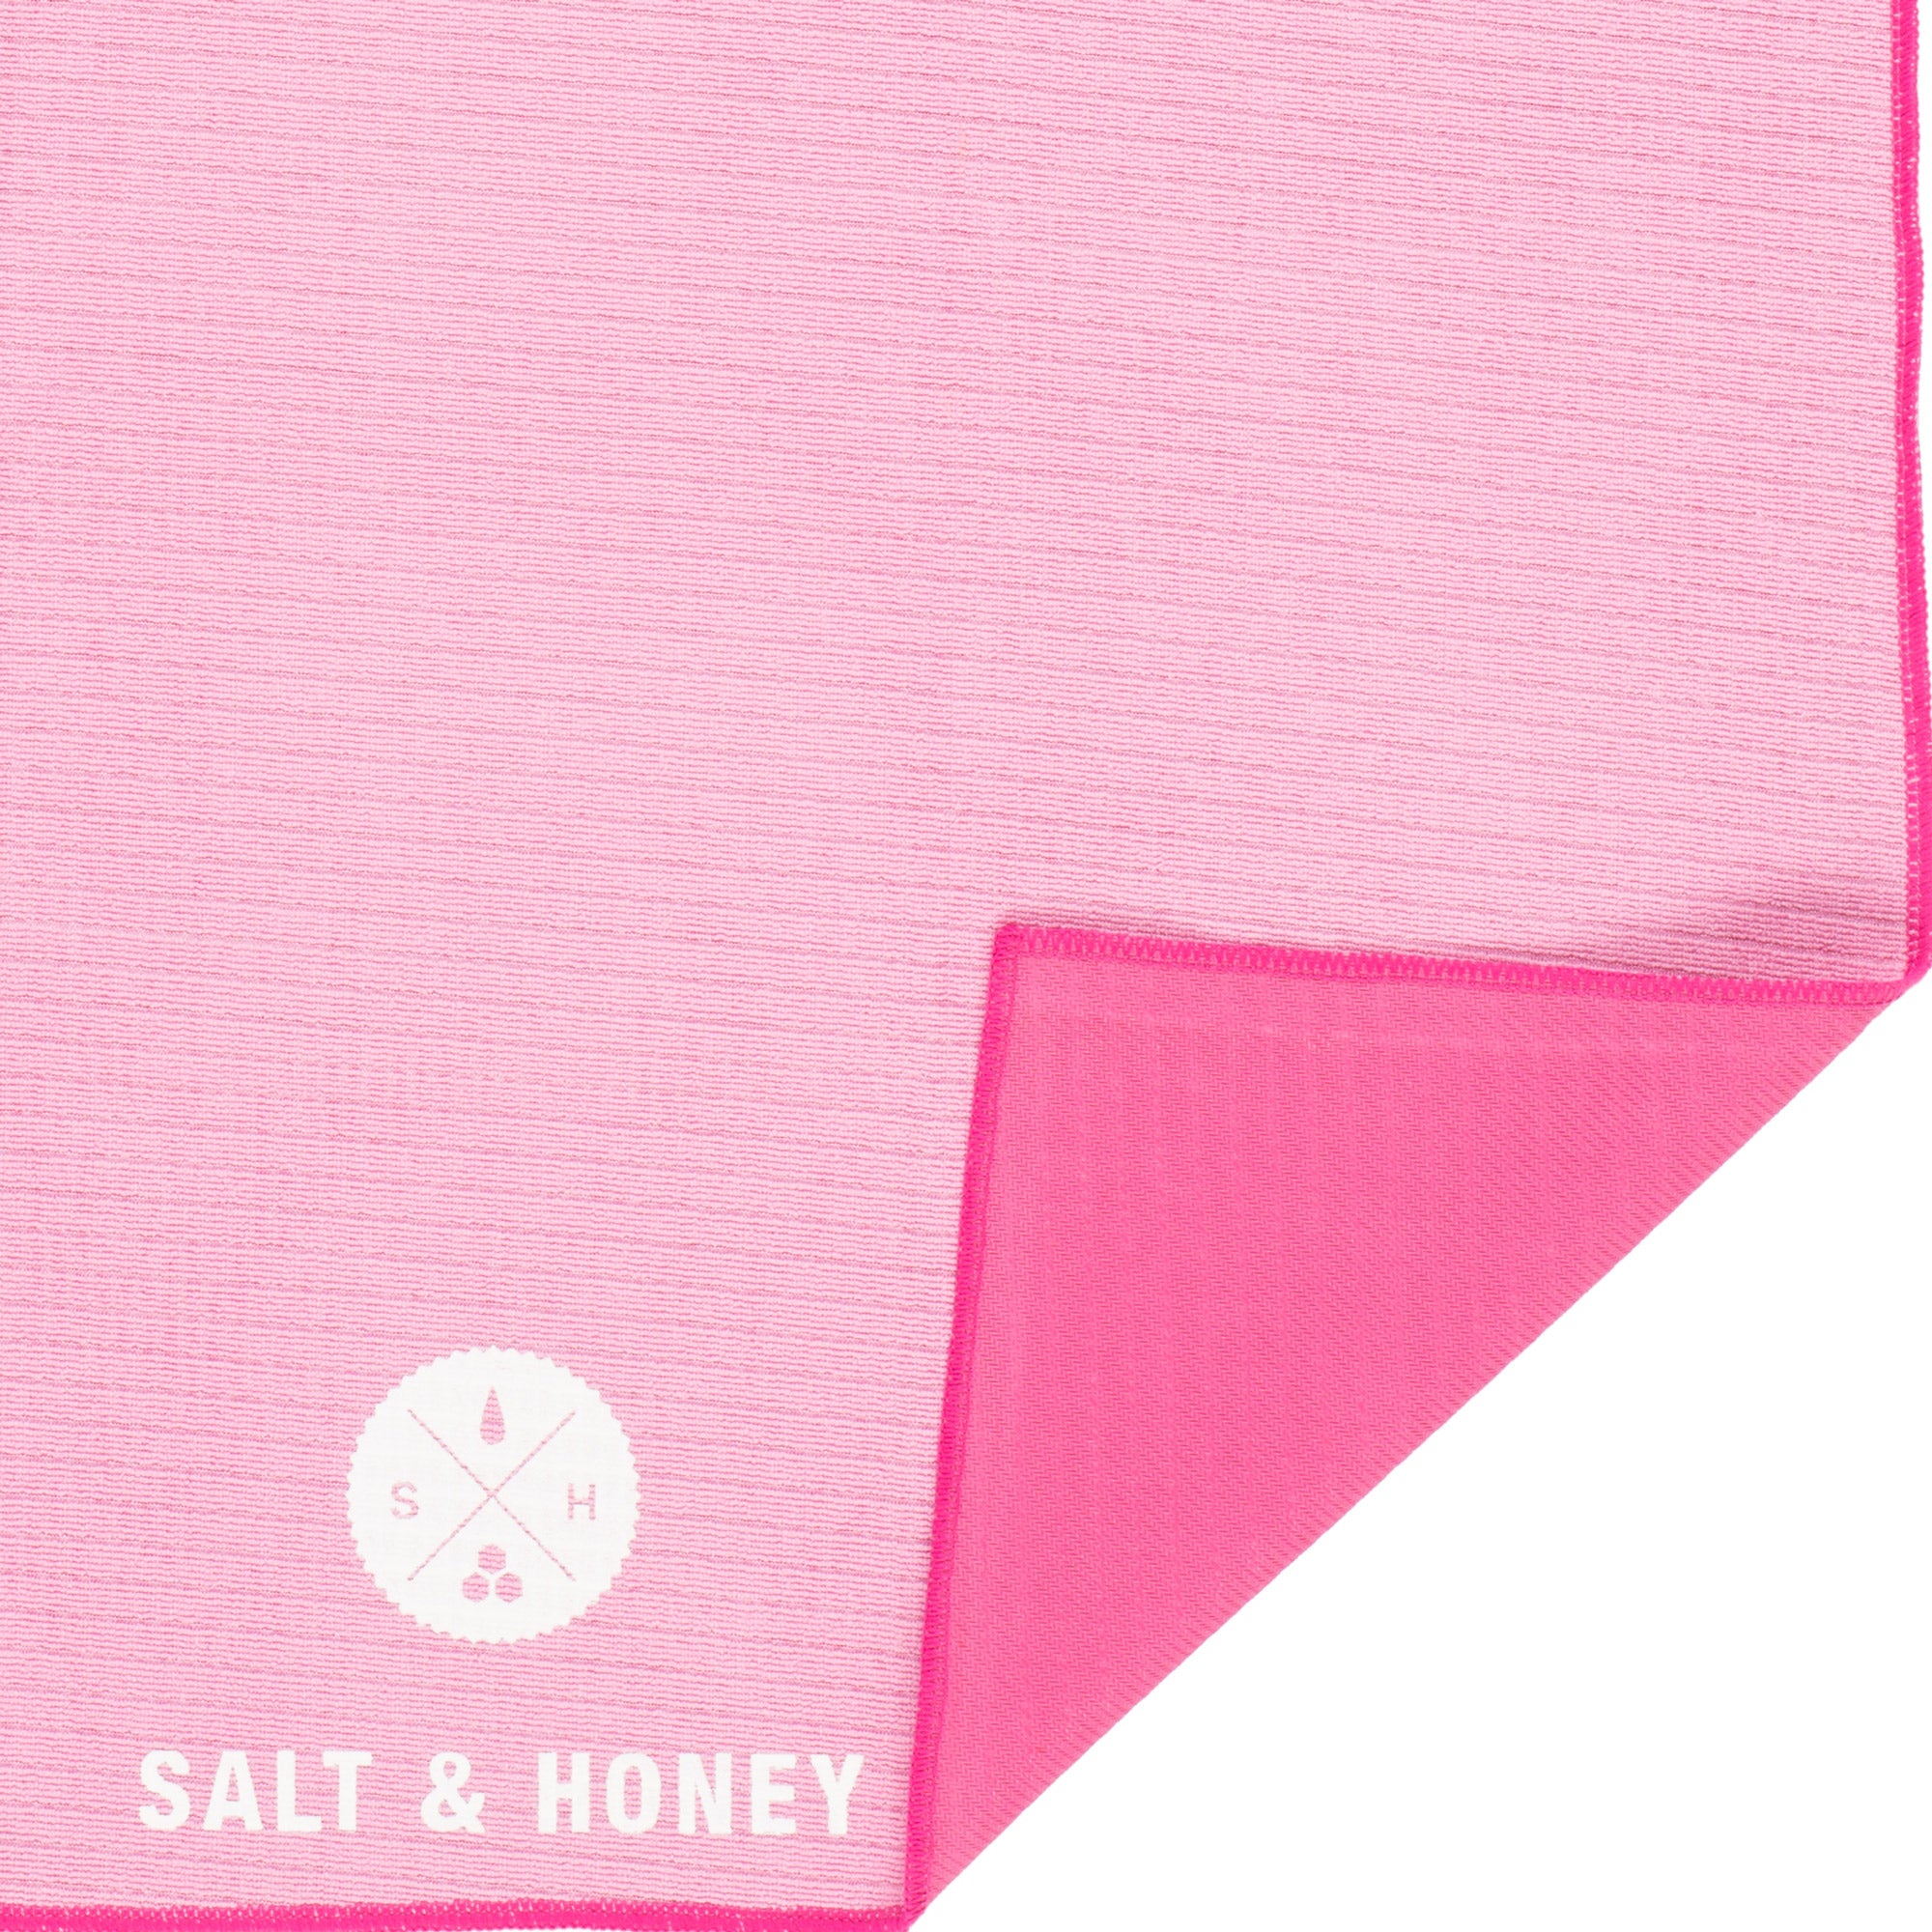 Salt & Honey Non-Slip Pilates Reformer Mat Towel (Black) 